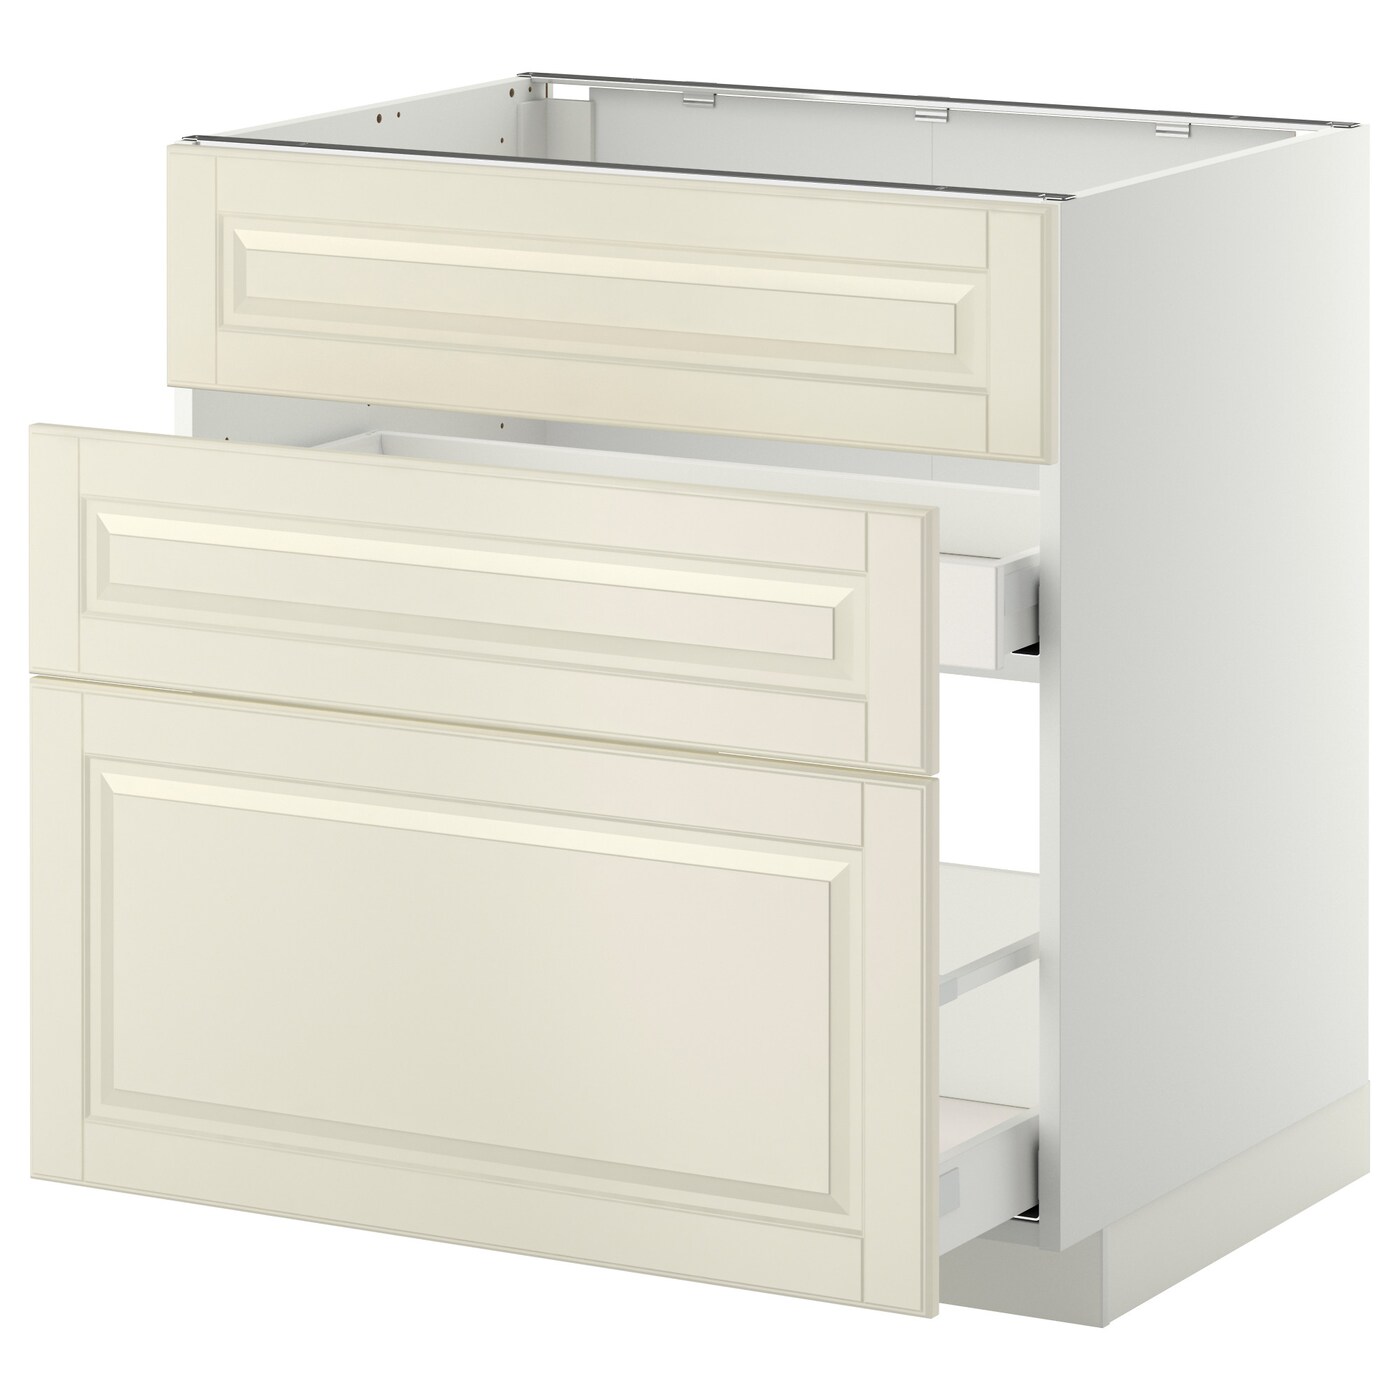 Напольный кухонный шкаф  - IKEA METOD MAXIMERA, 88x62x80см, белый/светло-бежевый, МЕТОД МАКСИМЕРА ИКЕА